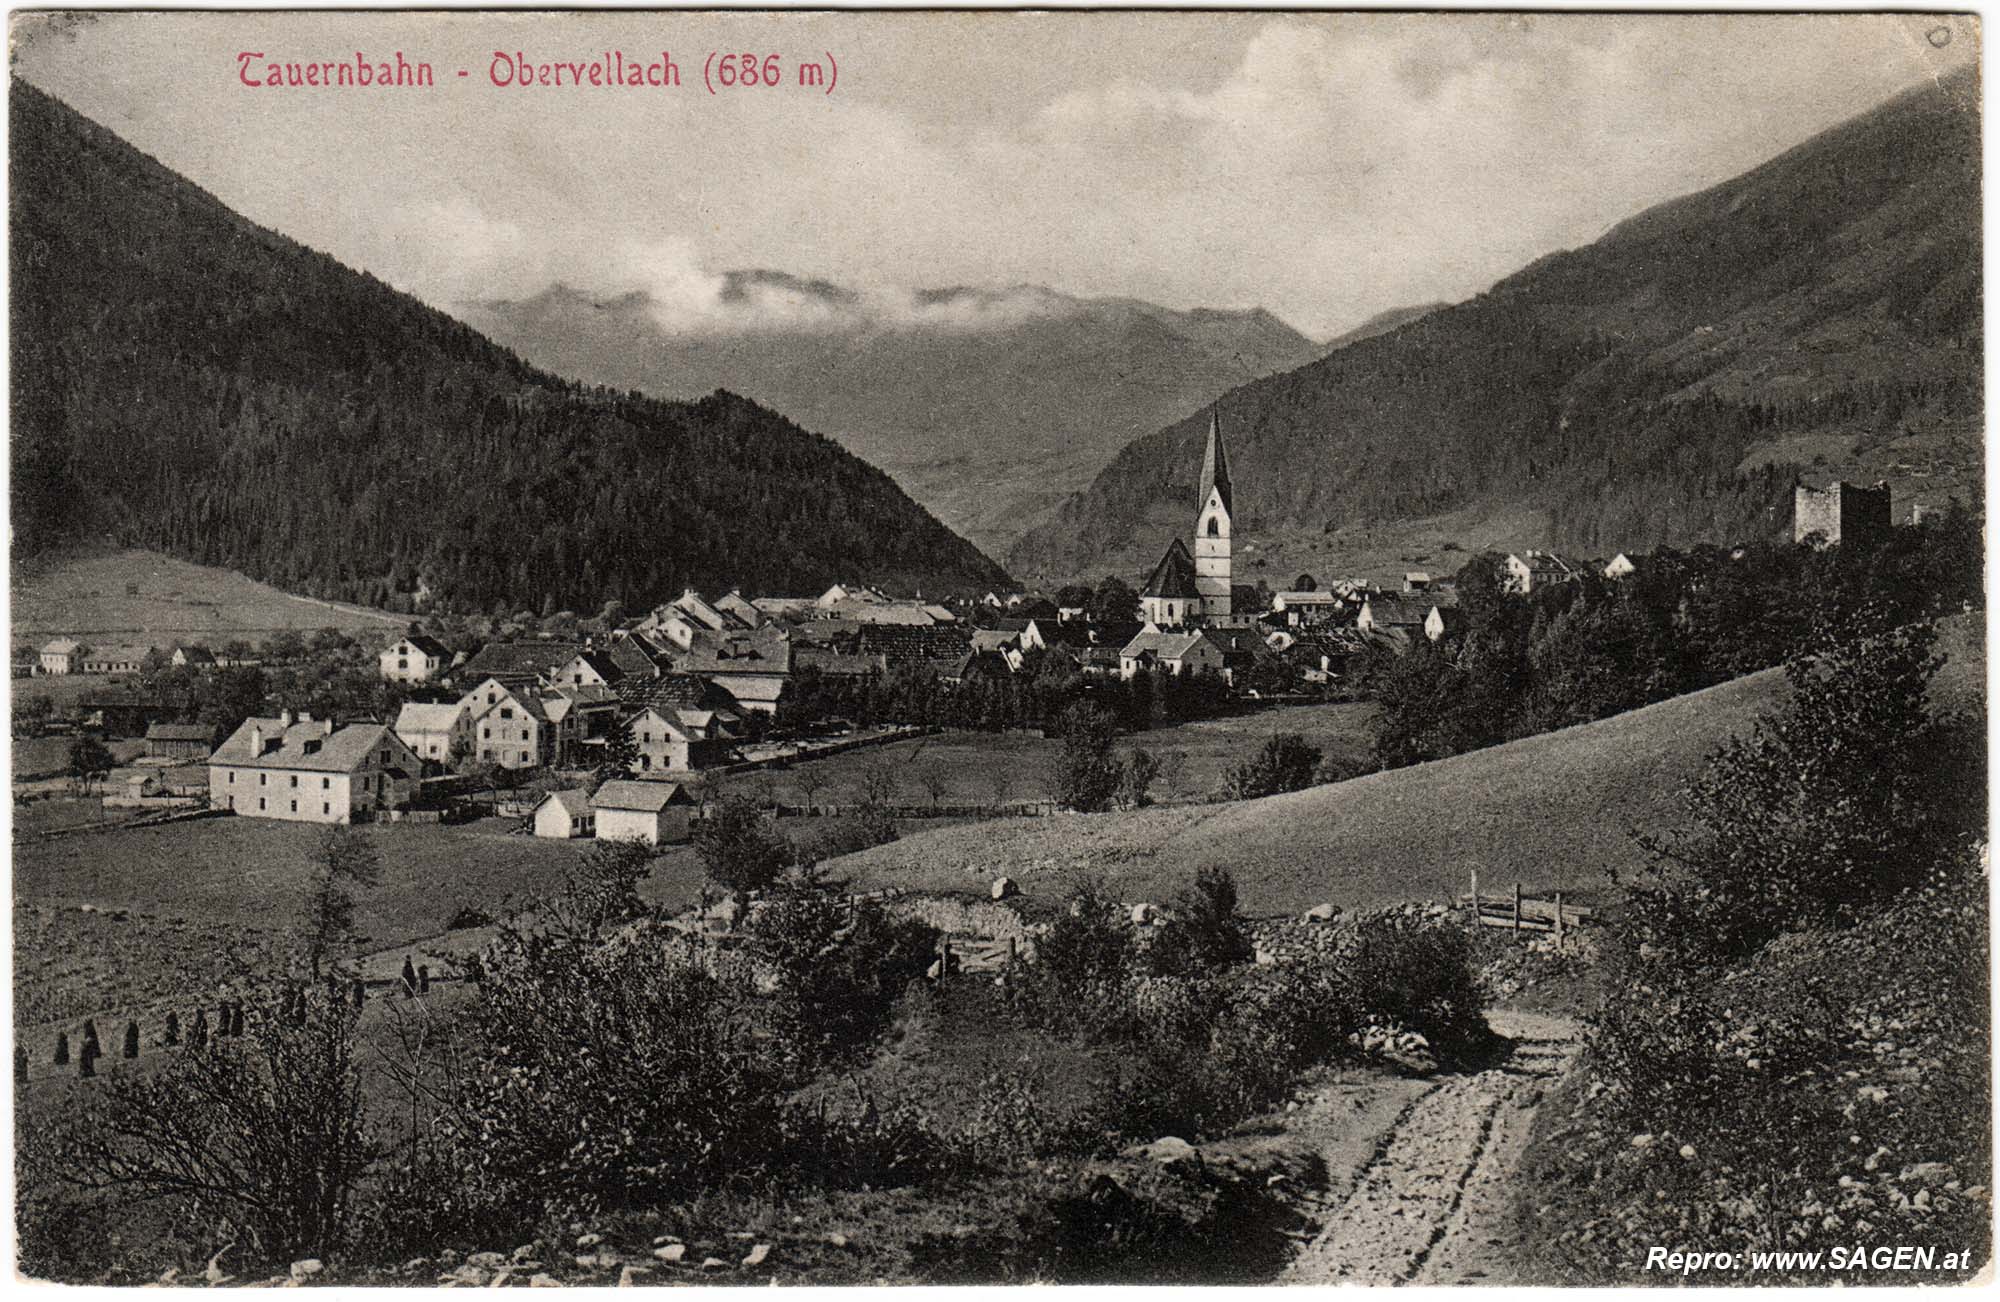 Tauernbahn - Obervellach 1911